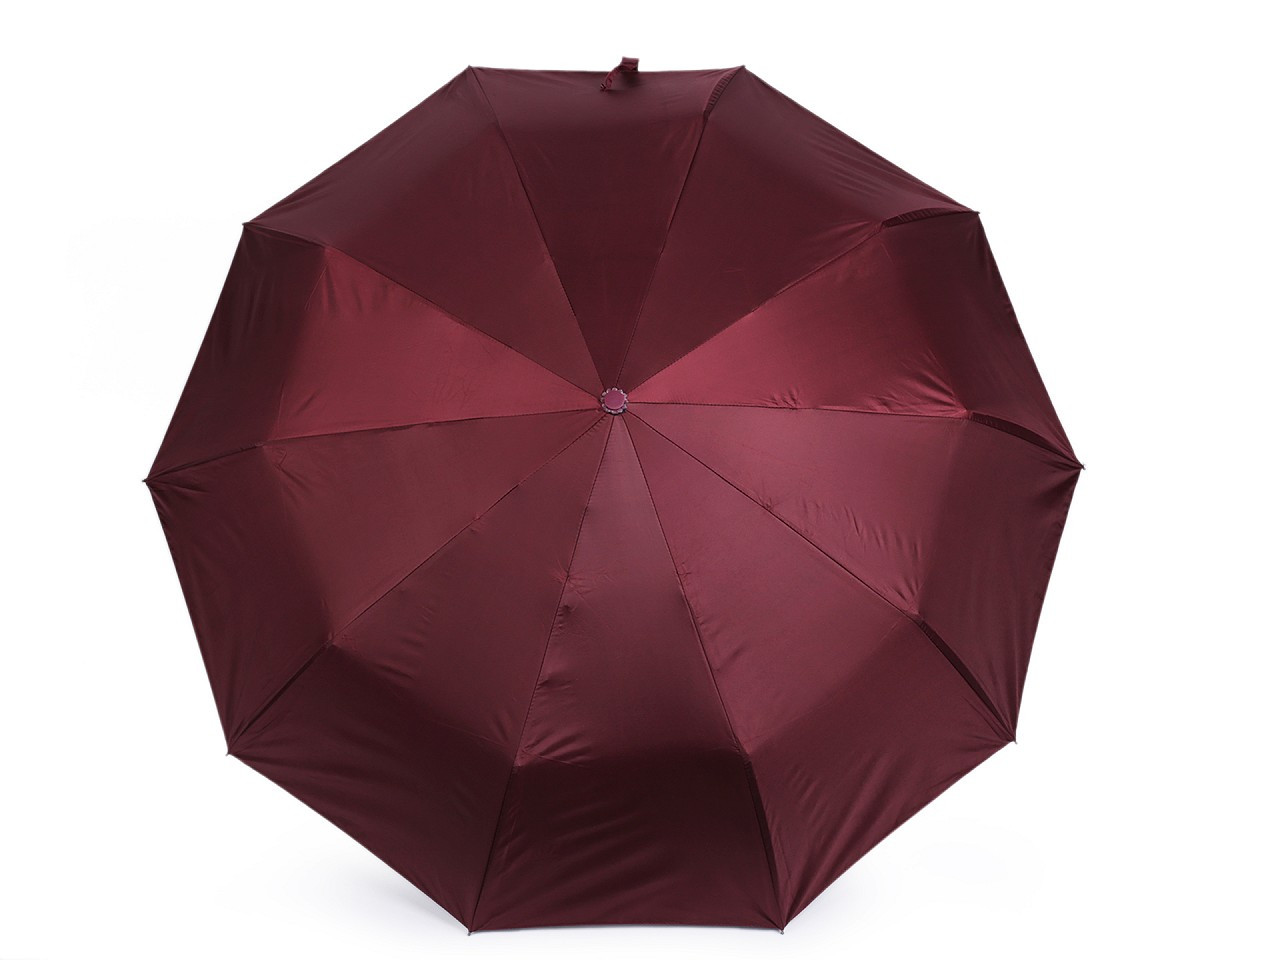 Skládací deštník s led světlem v rukojeti, barva 3 vínová